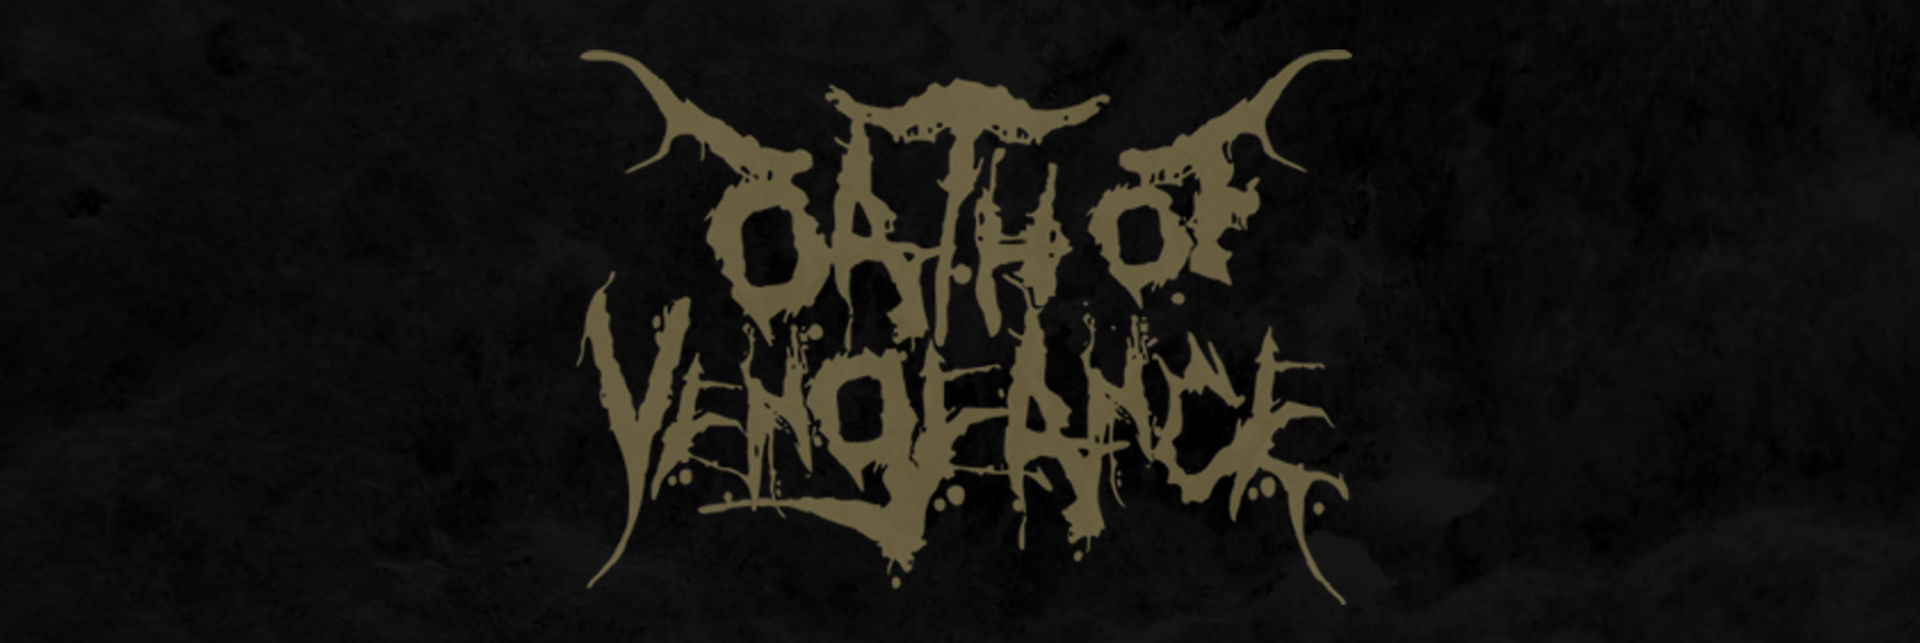 Oath of Vengeance